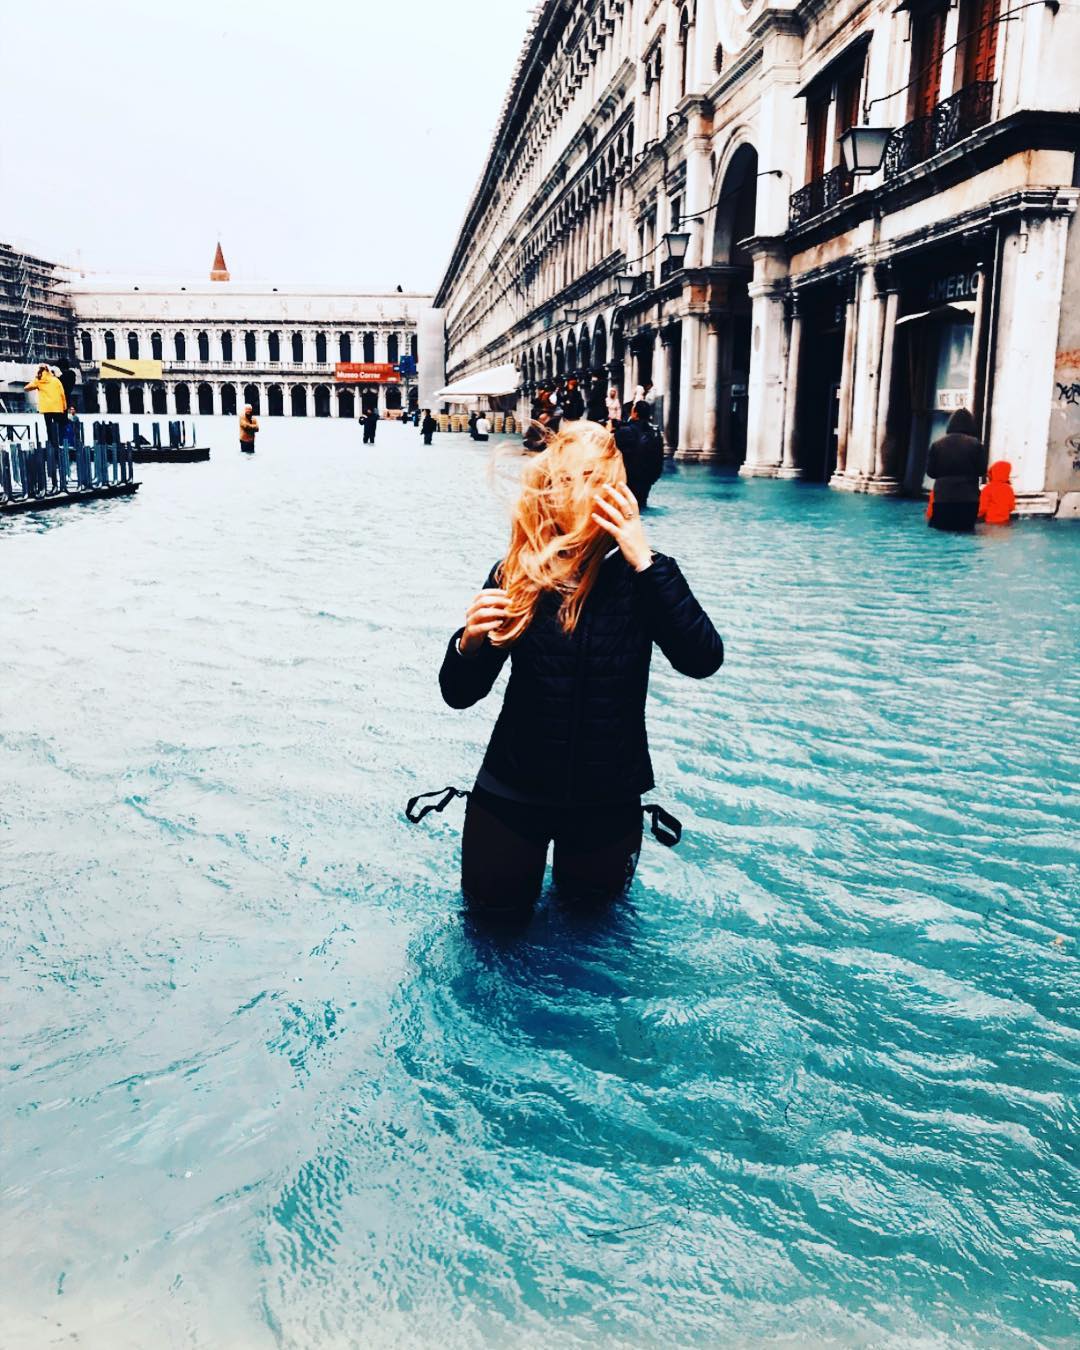 Венеция на 77% ушла под воду: впечатляющие фото и видео